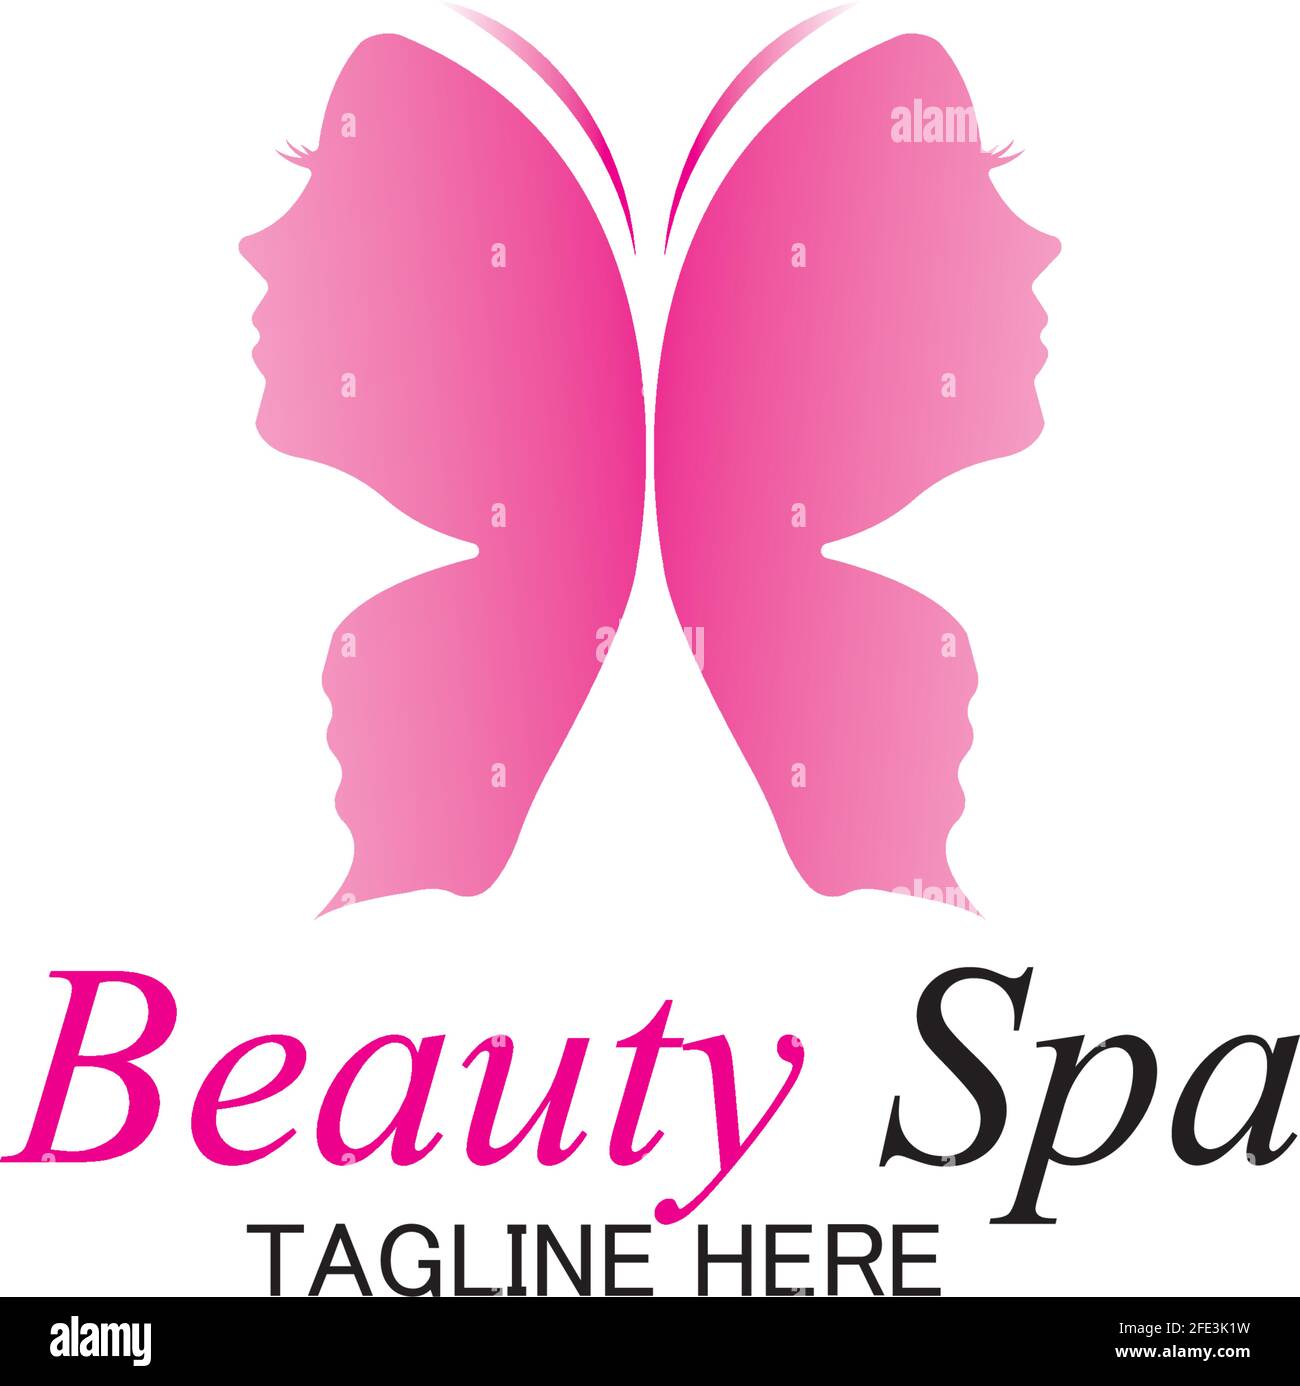 beauty spa logo design template-vector Stock Vector Image & Art ...